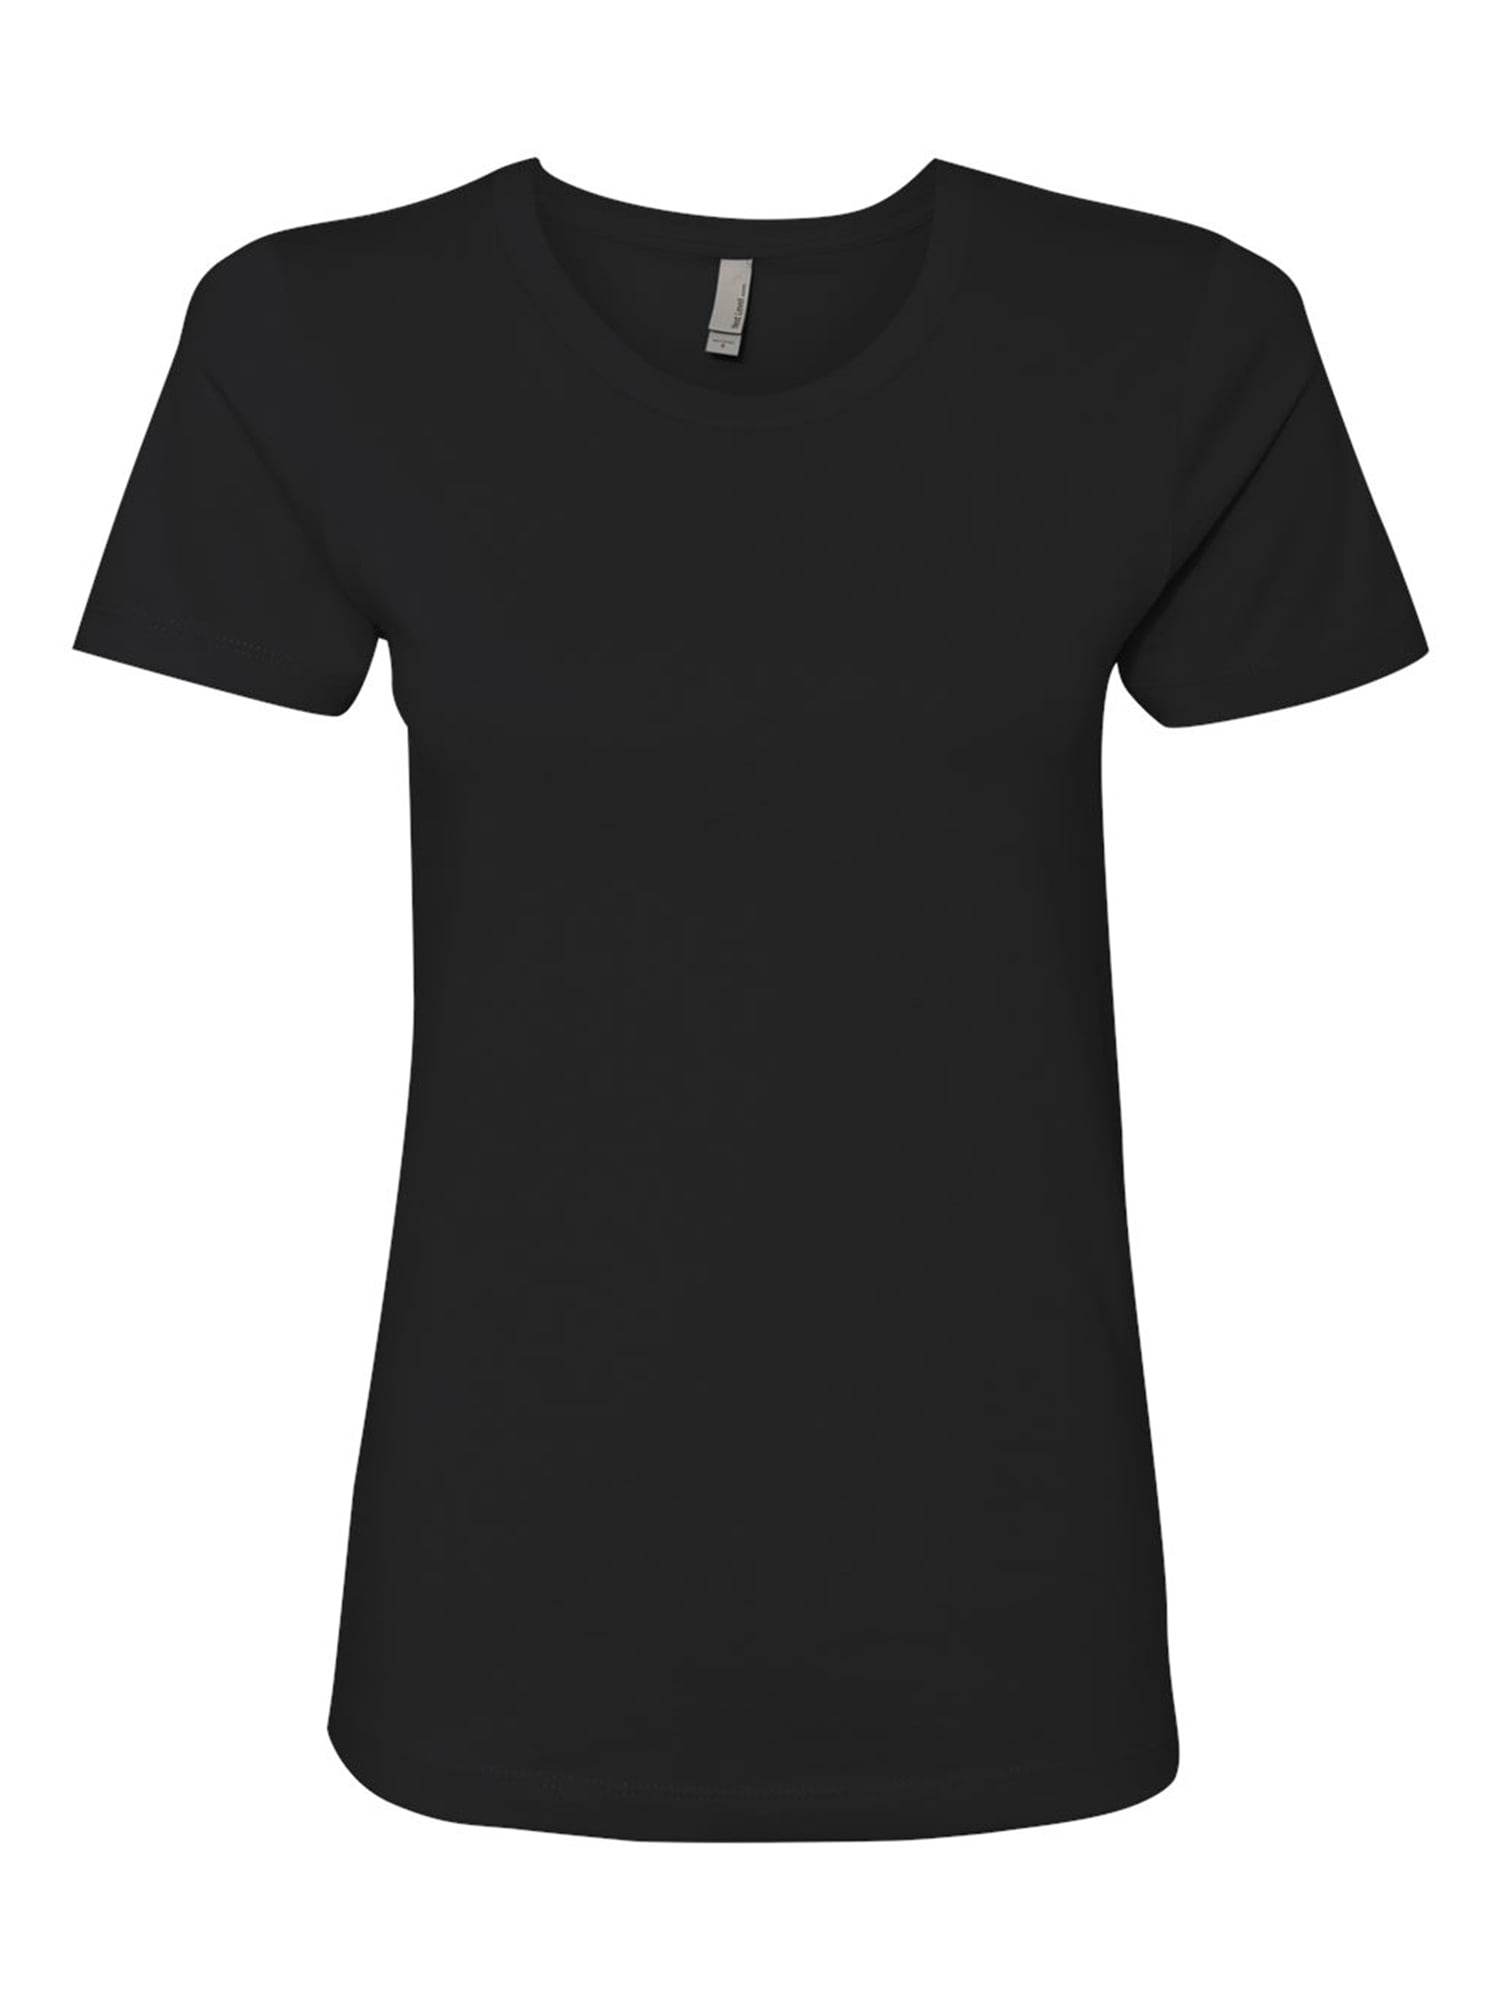 Next - Plain T Shirt for Women - Short Sleeve Women - Basic Daily Plain Value Tee - Walmart.com